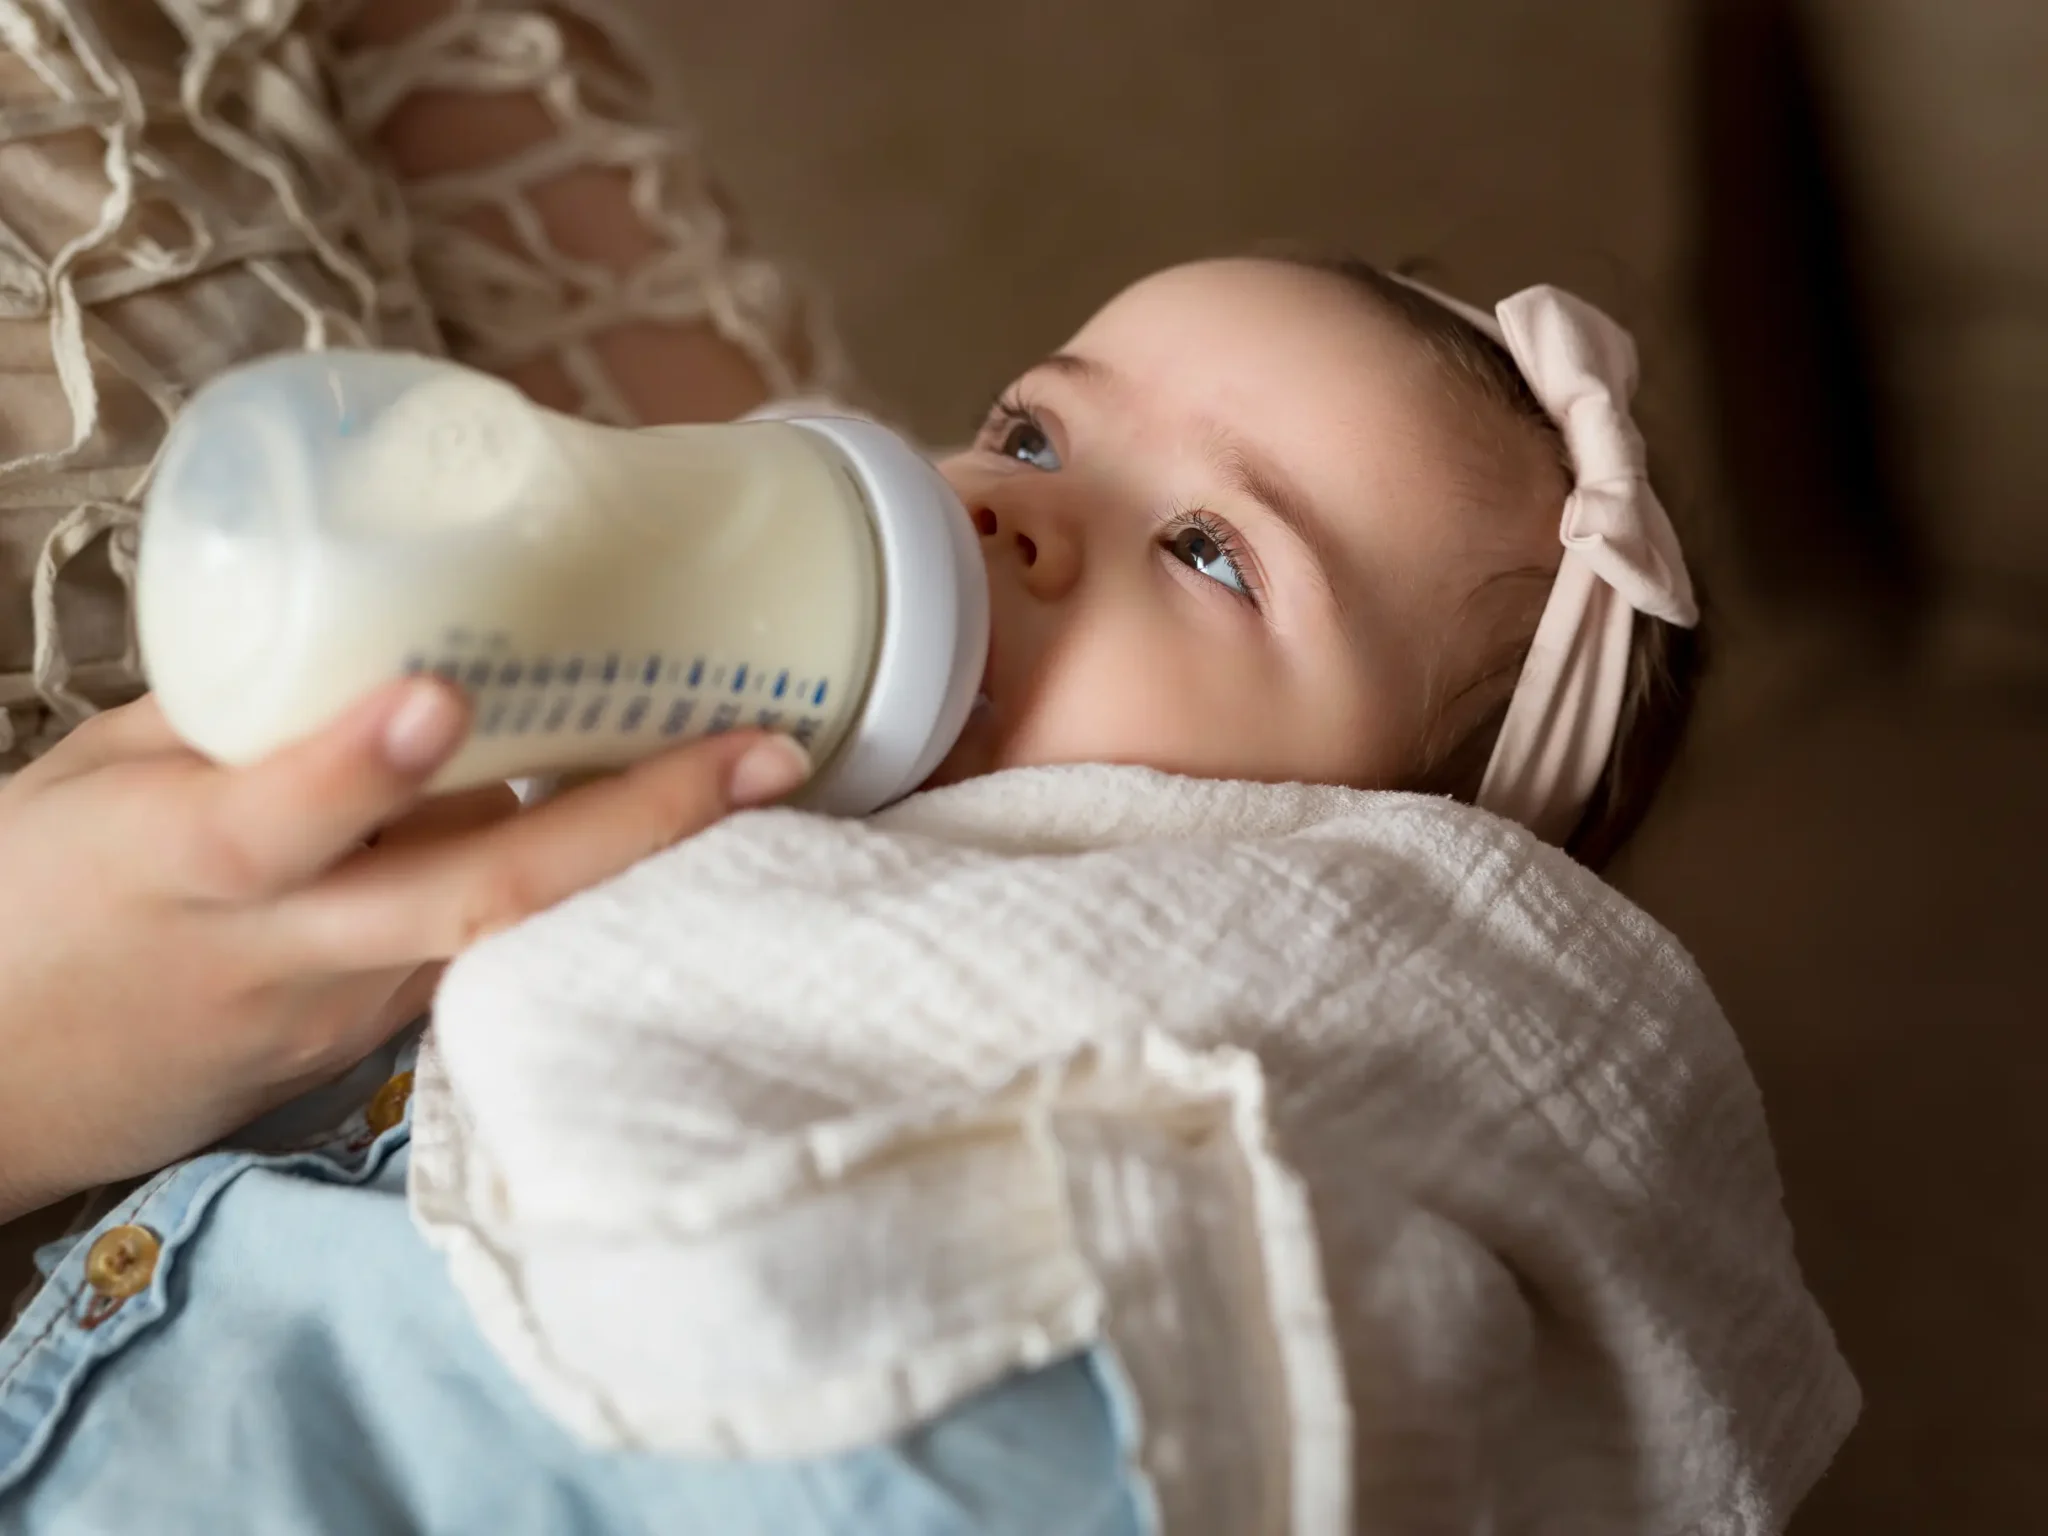 bambina che beve latte artificiale, la differenza tra galattosemia e intolleranza al lattosio